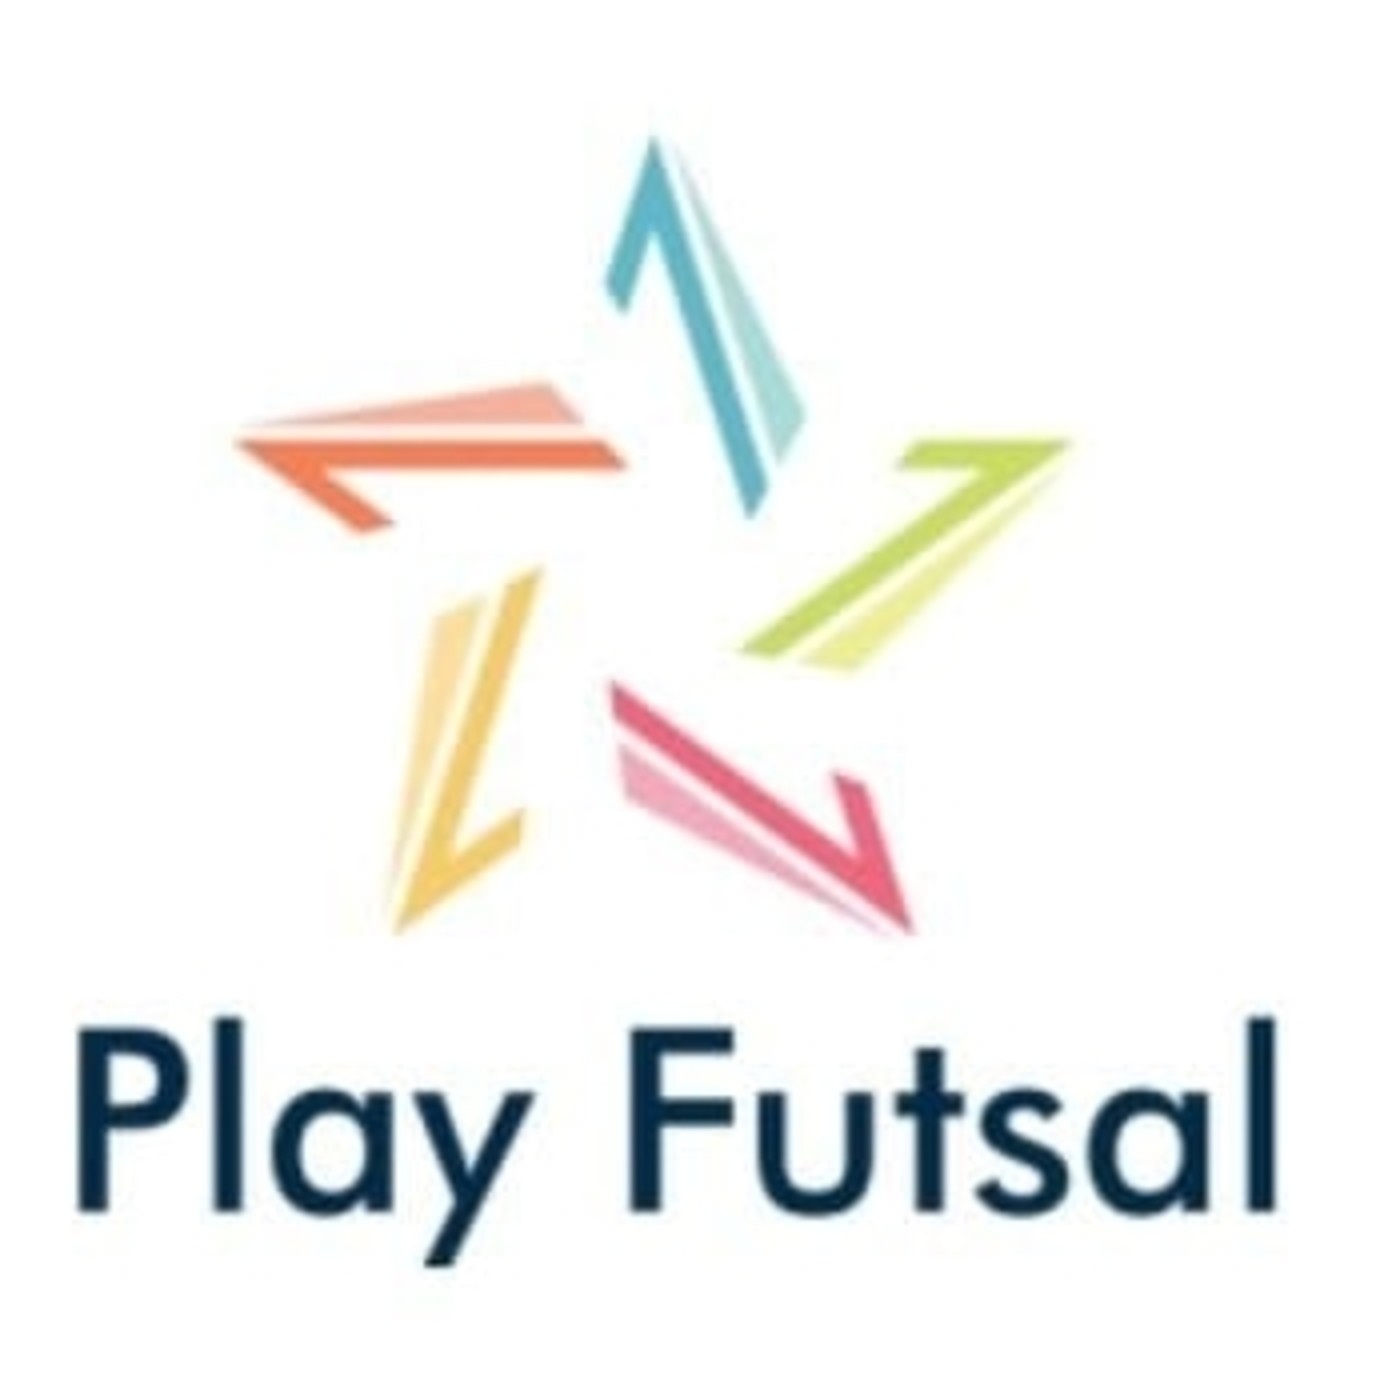 Play Futsal